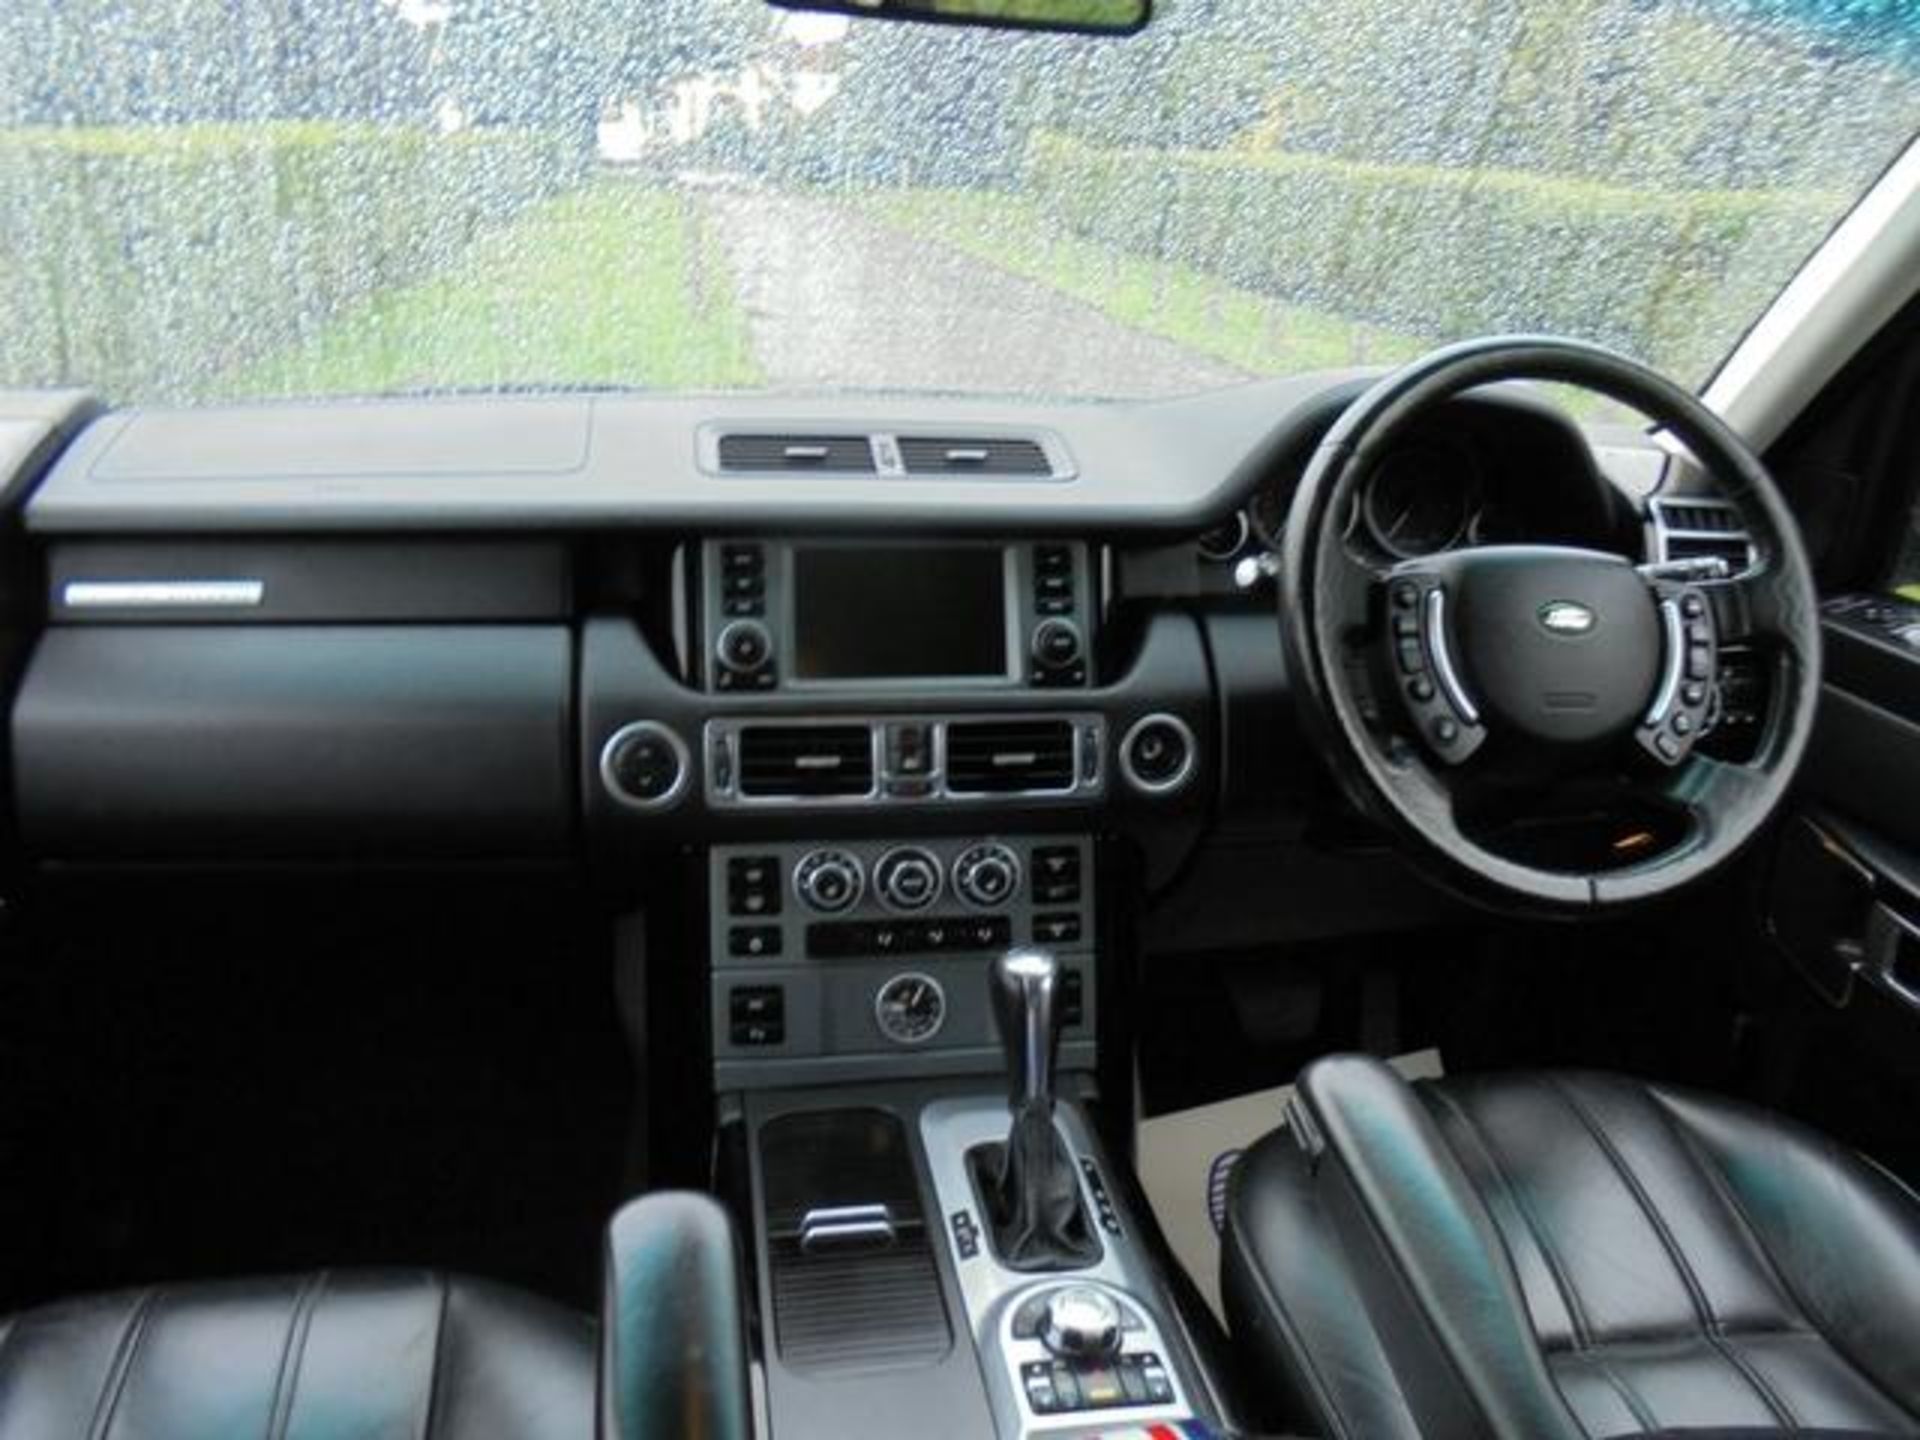 2008 08 reg Land Rover Range Rover 3.6 TD V8 Vogue 5dr - Image 7 of 16